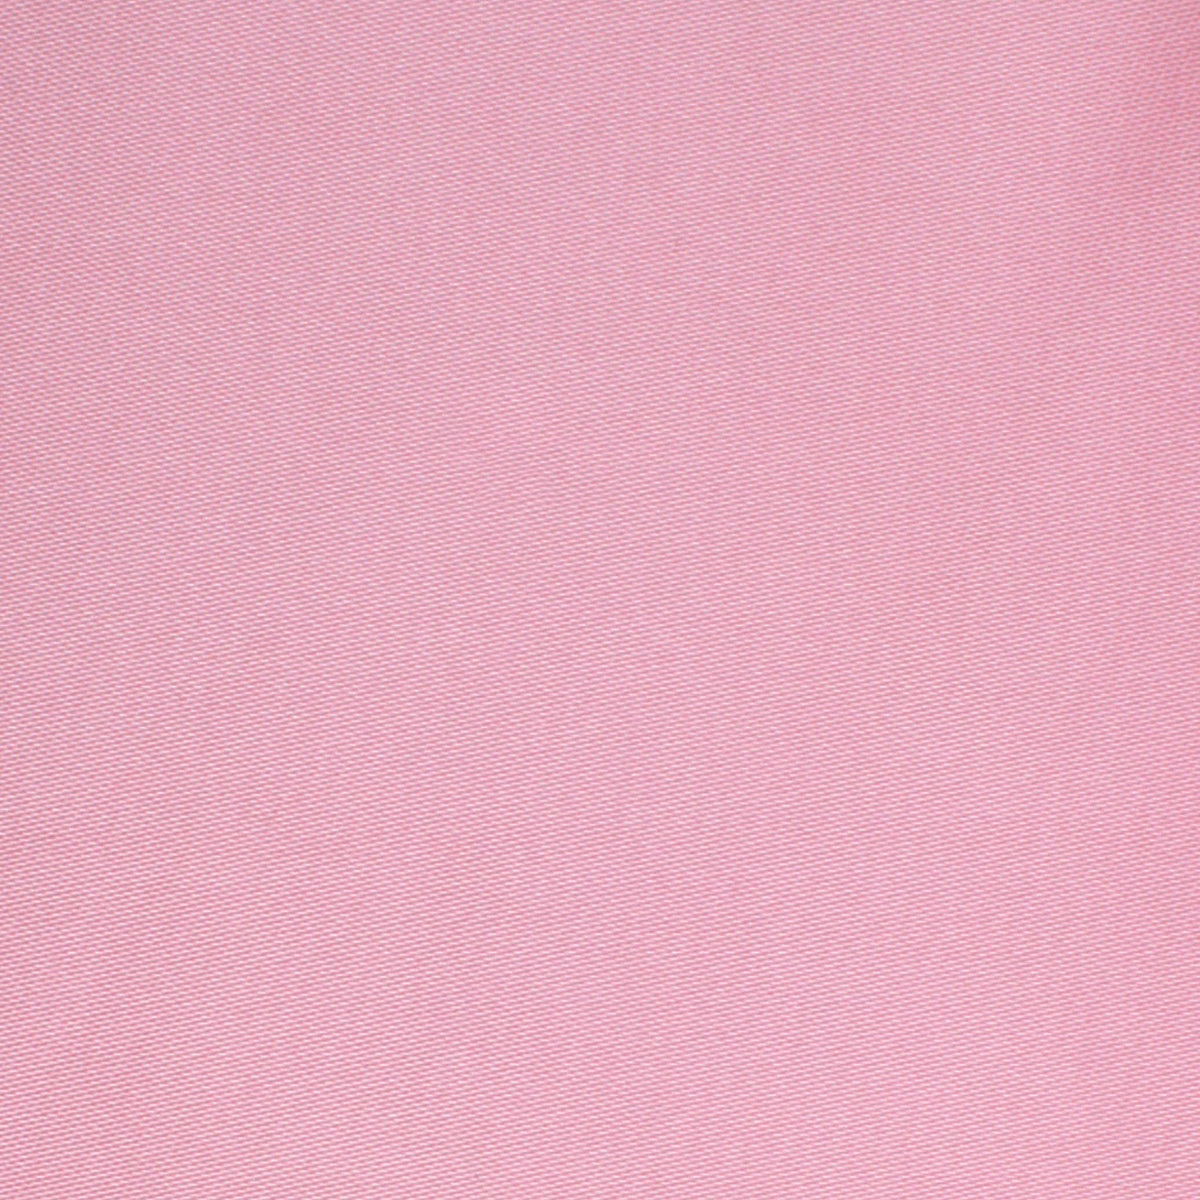 Rose Pink Satin Necktie Fabric